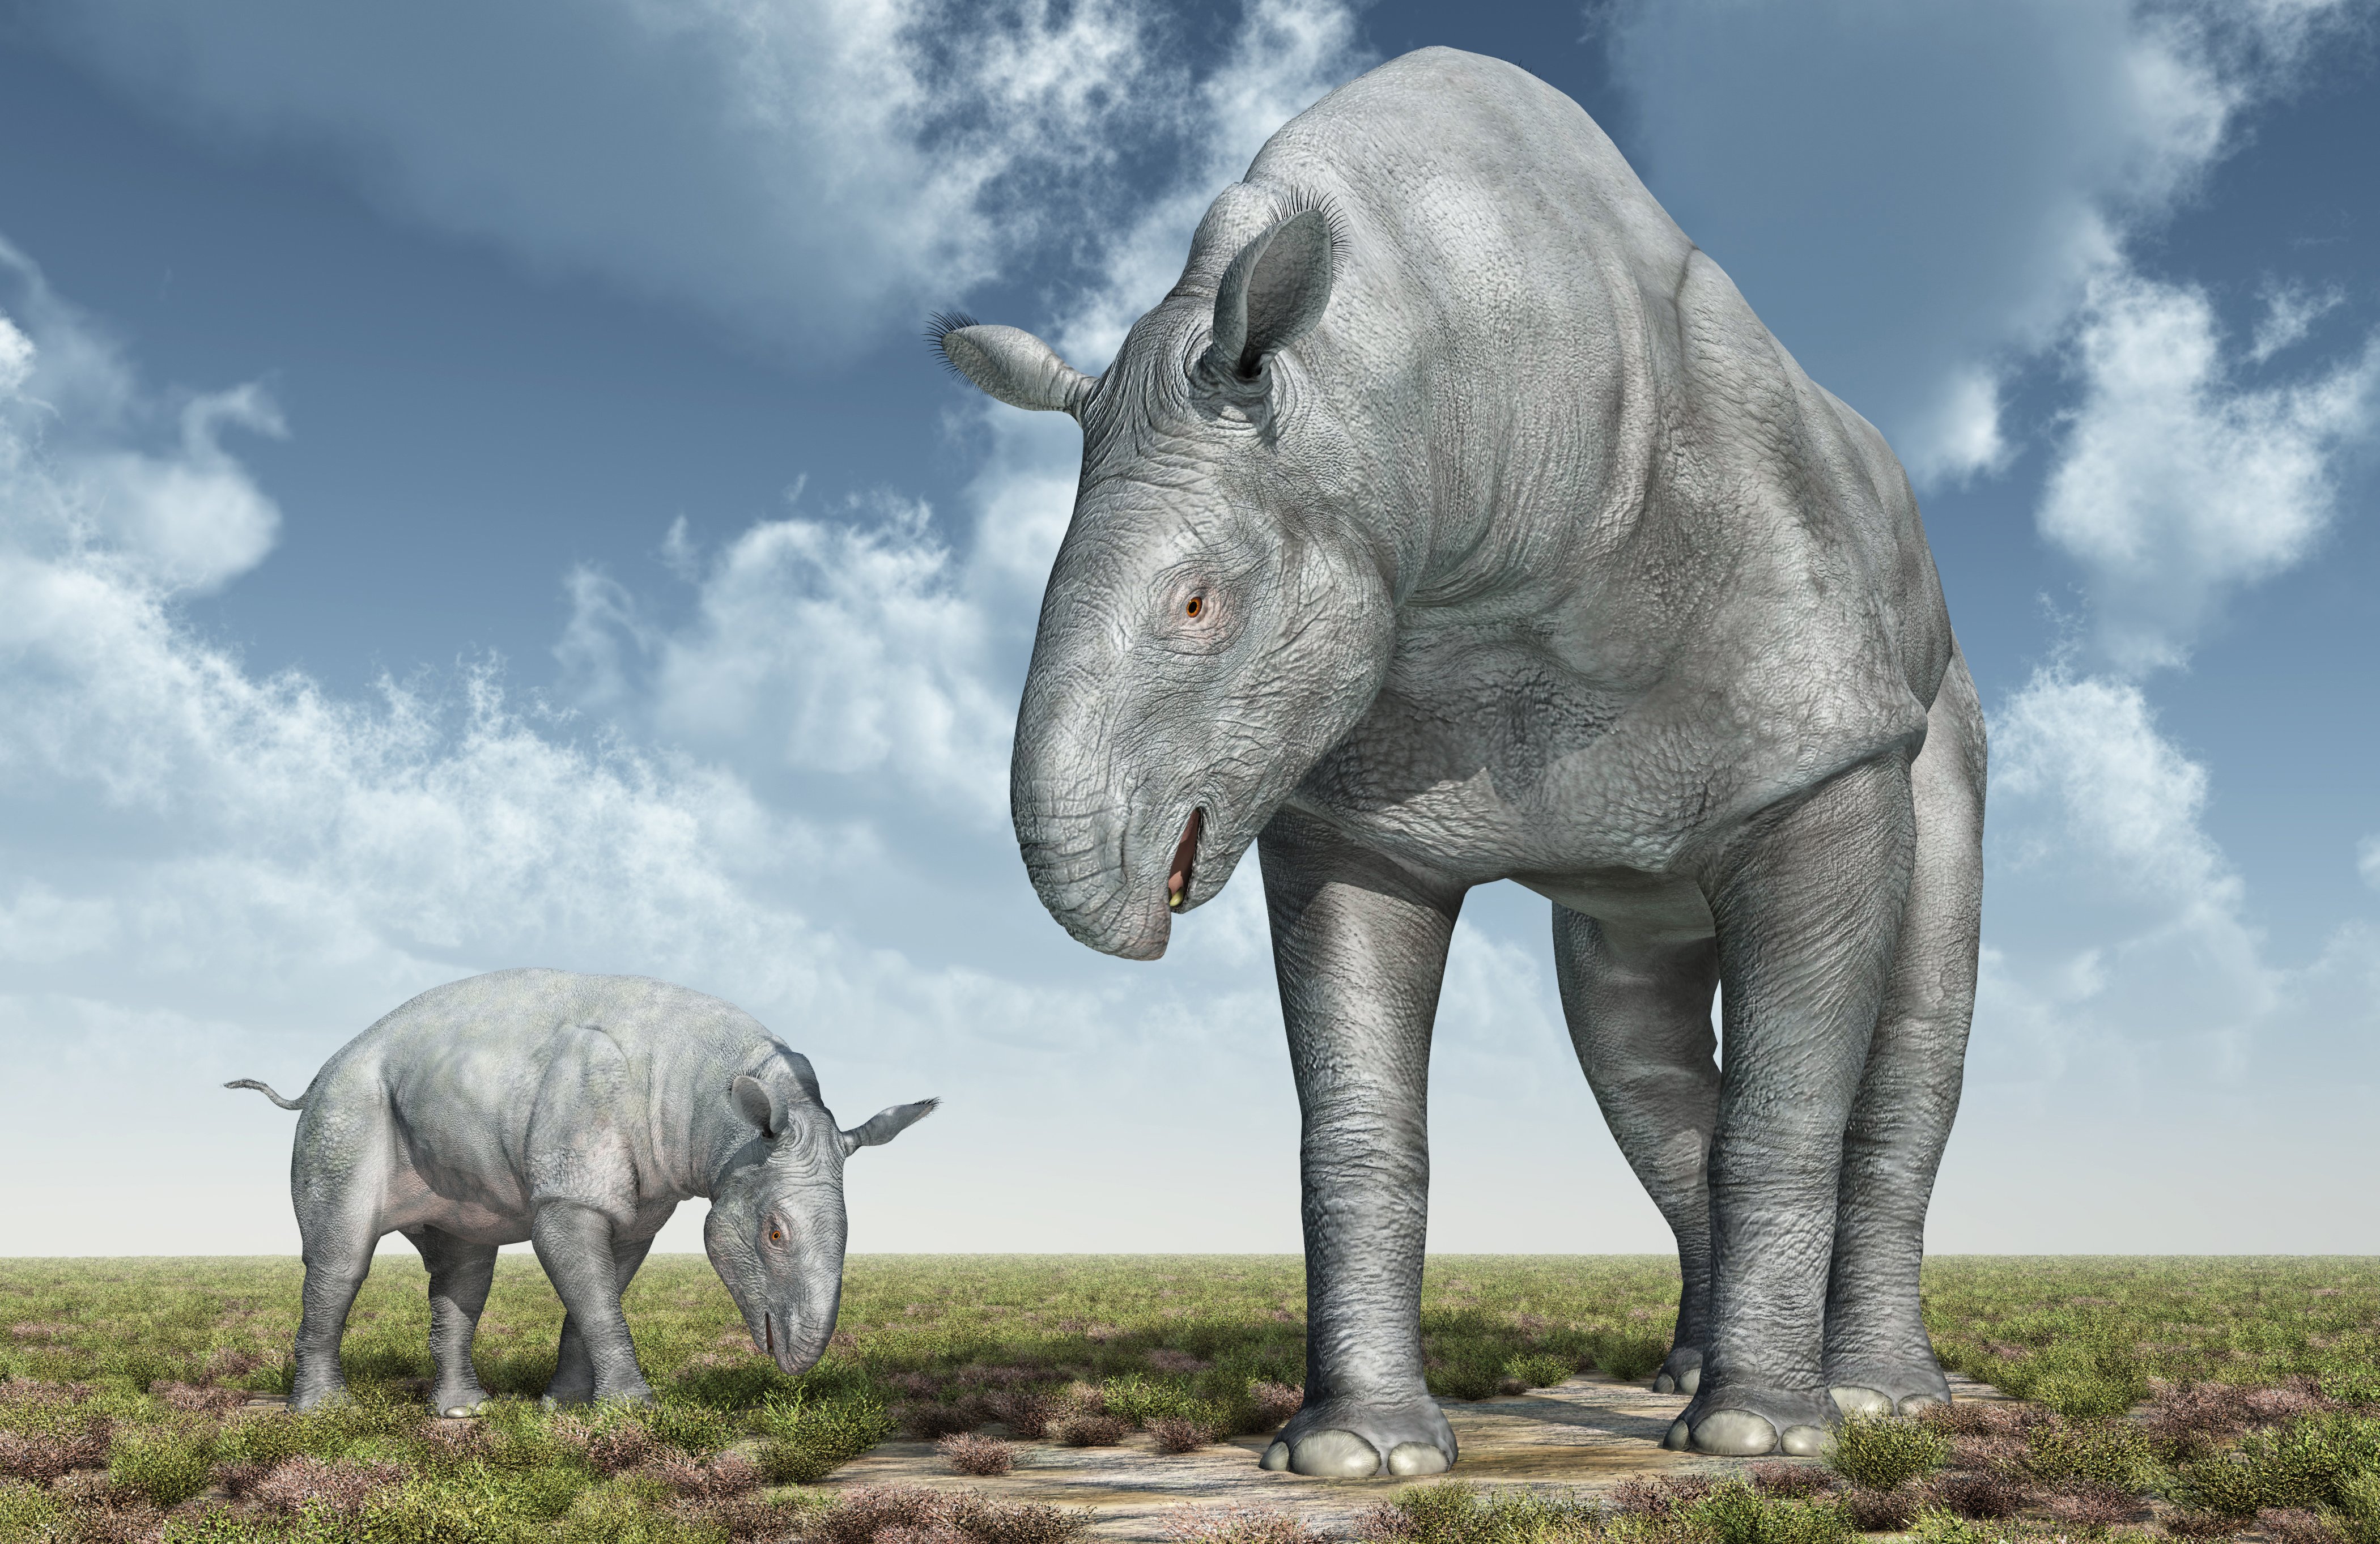 Image de synthèse montrant des Paraceratherium, le plus grand mammifère connu à ce jour.